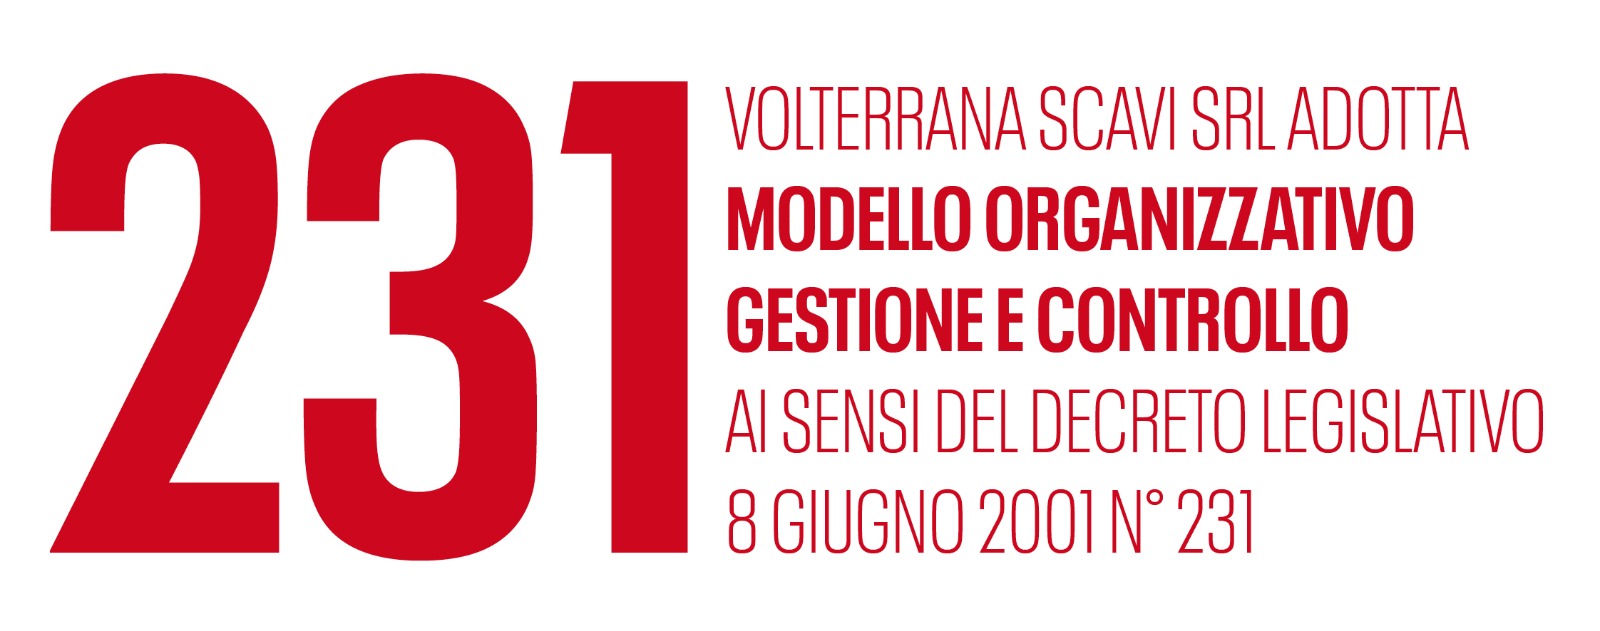 Volterrana Scavi adotta il modello organizzativo gestione econtrollo ai sensi del dl 8 giugno 2001 n. 231